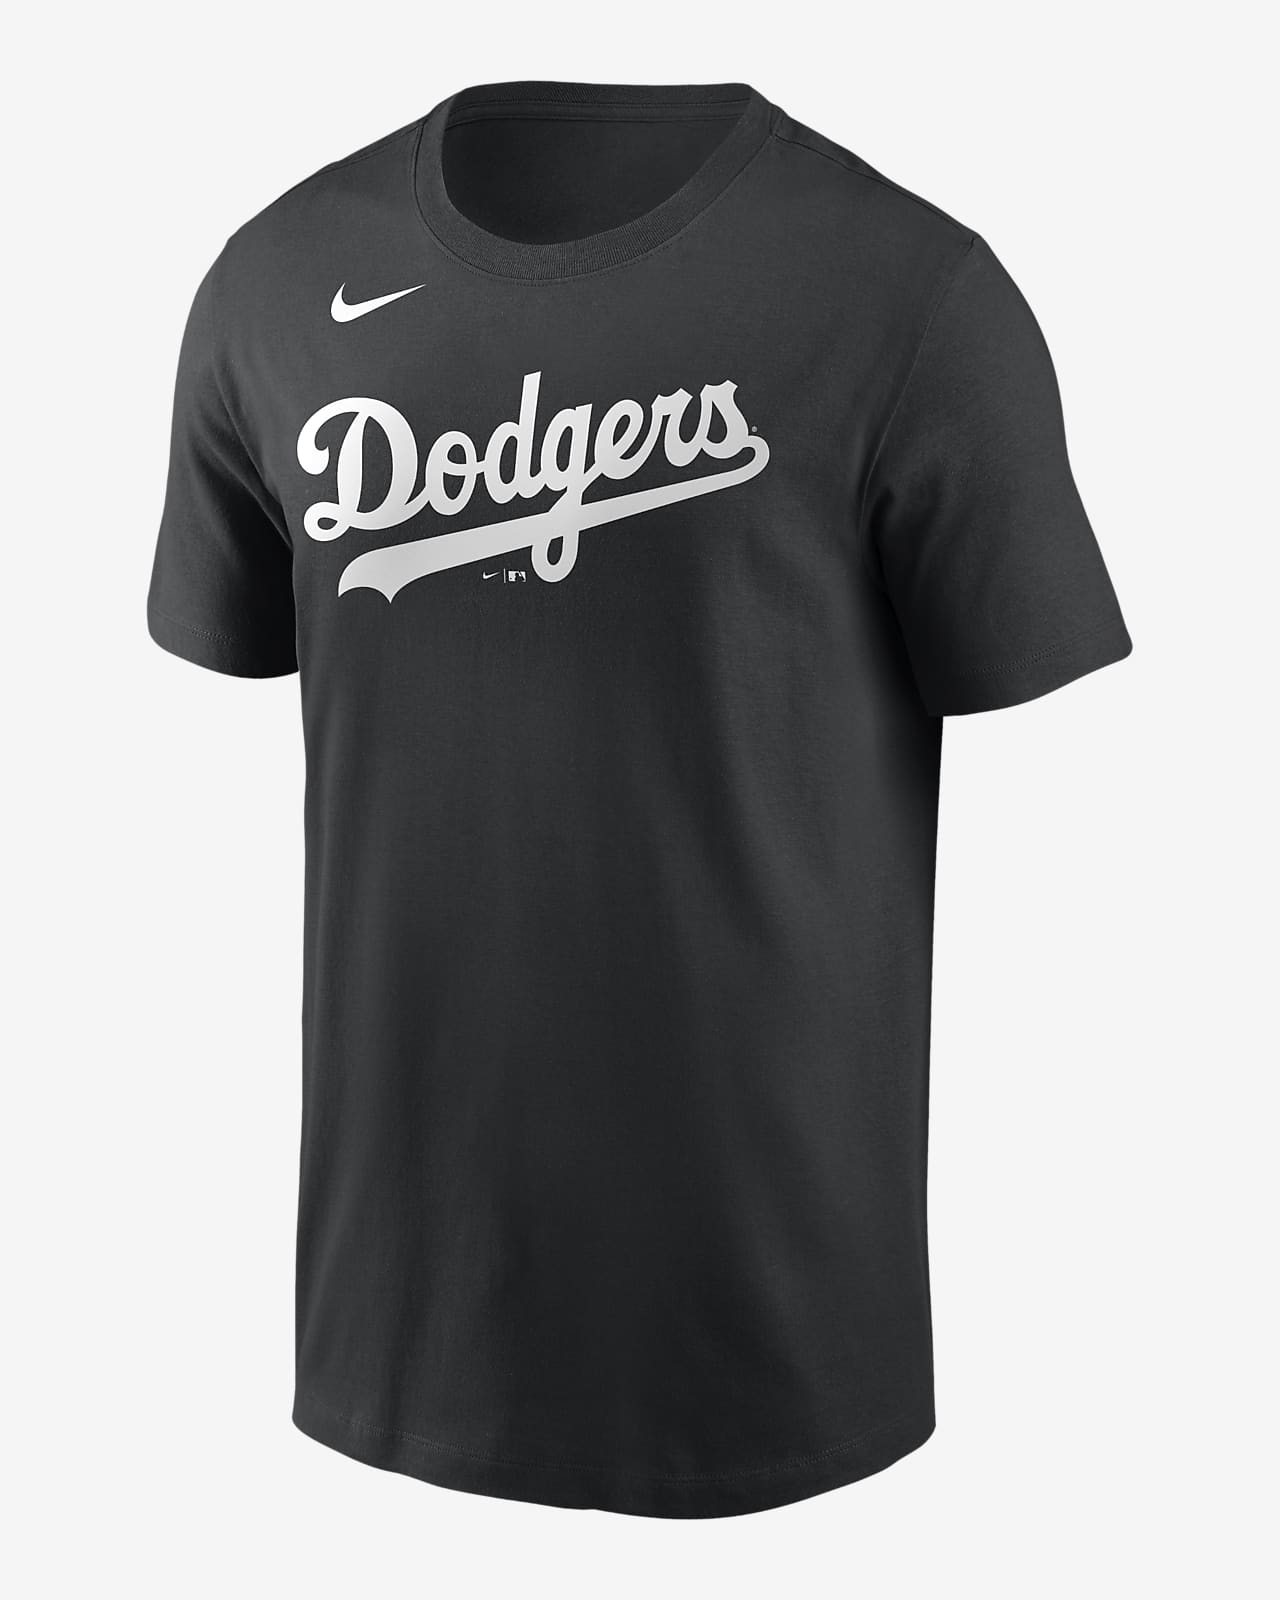 MLB Los Angeles Dodgers (Clayton Kershaw) Men's T-Shirt. Nike.com